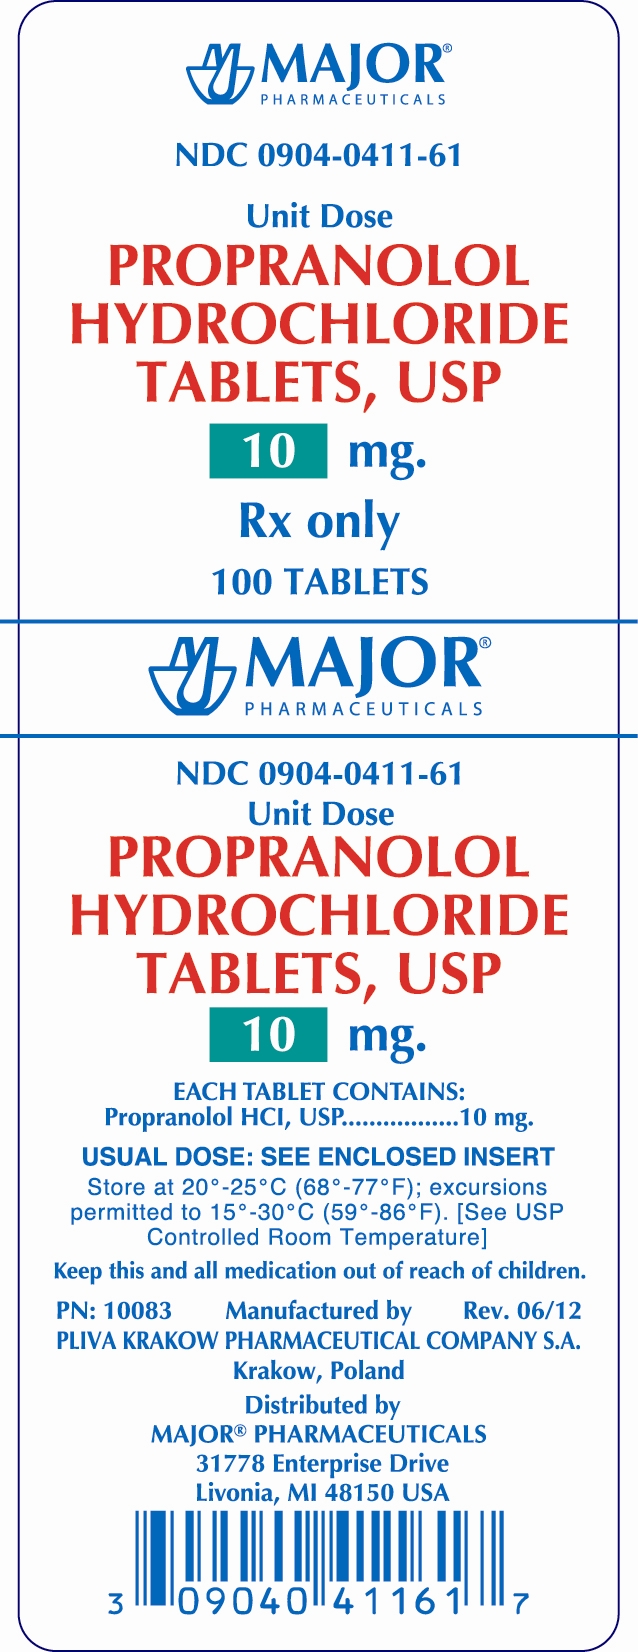 PROPRANOLOL HYDROCHLORIDE TABLETS, USP 10MG